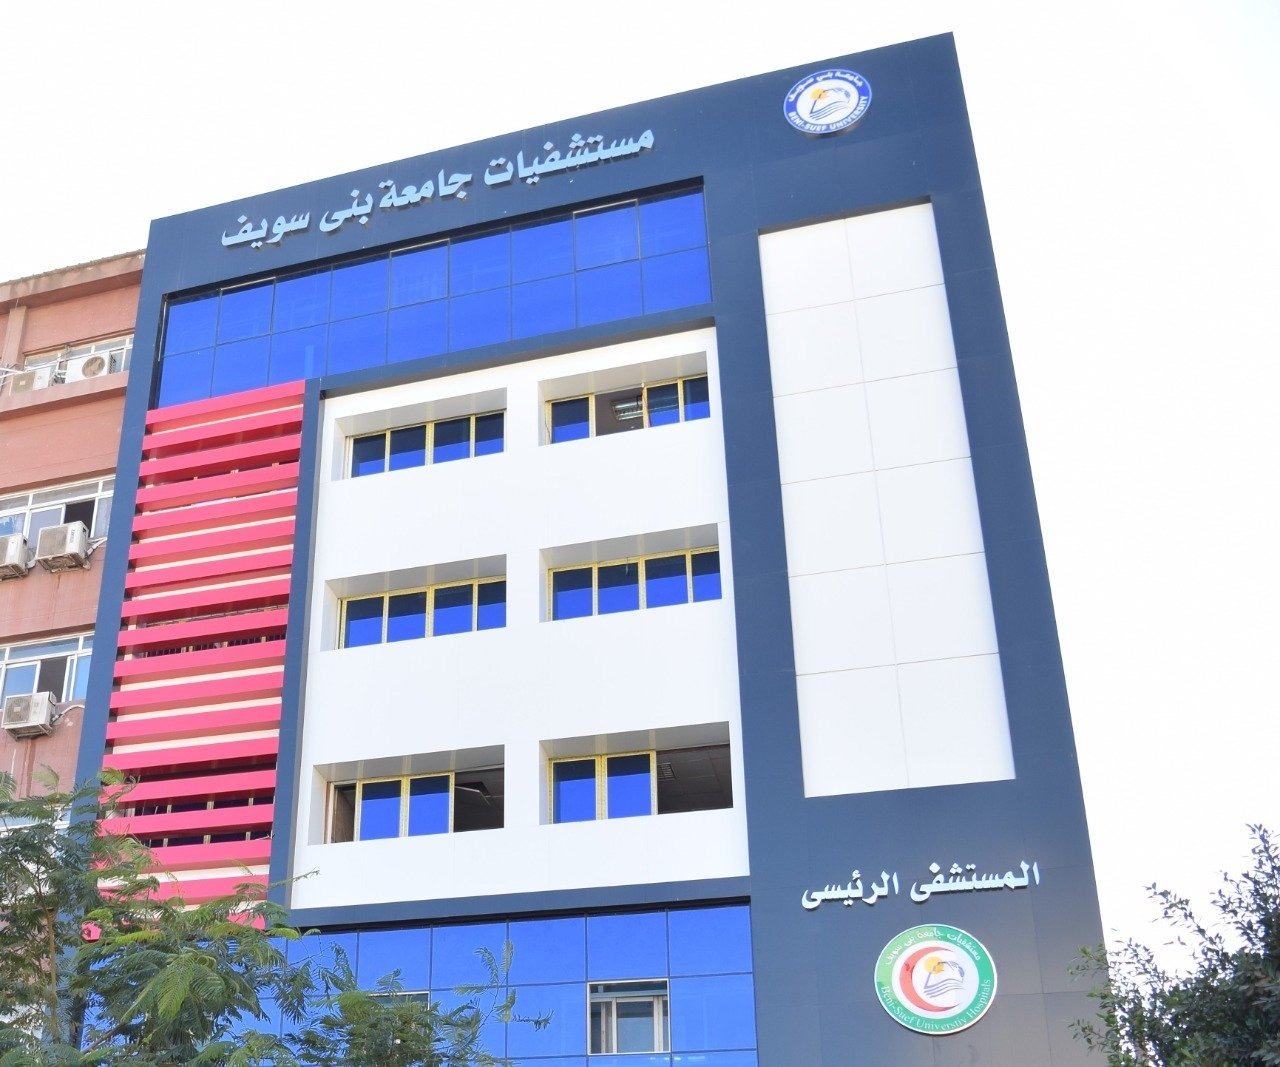 مستشفيات جامعة بنى سويف